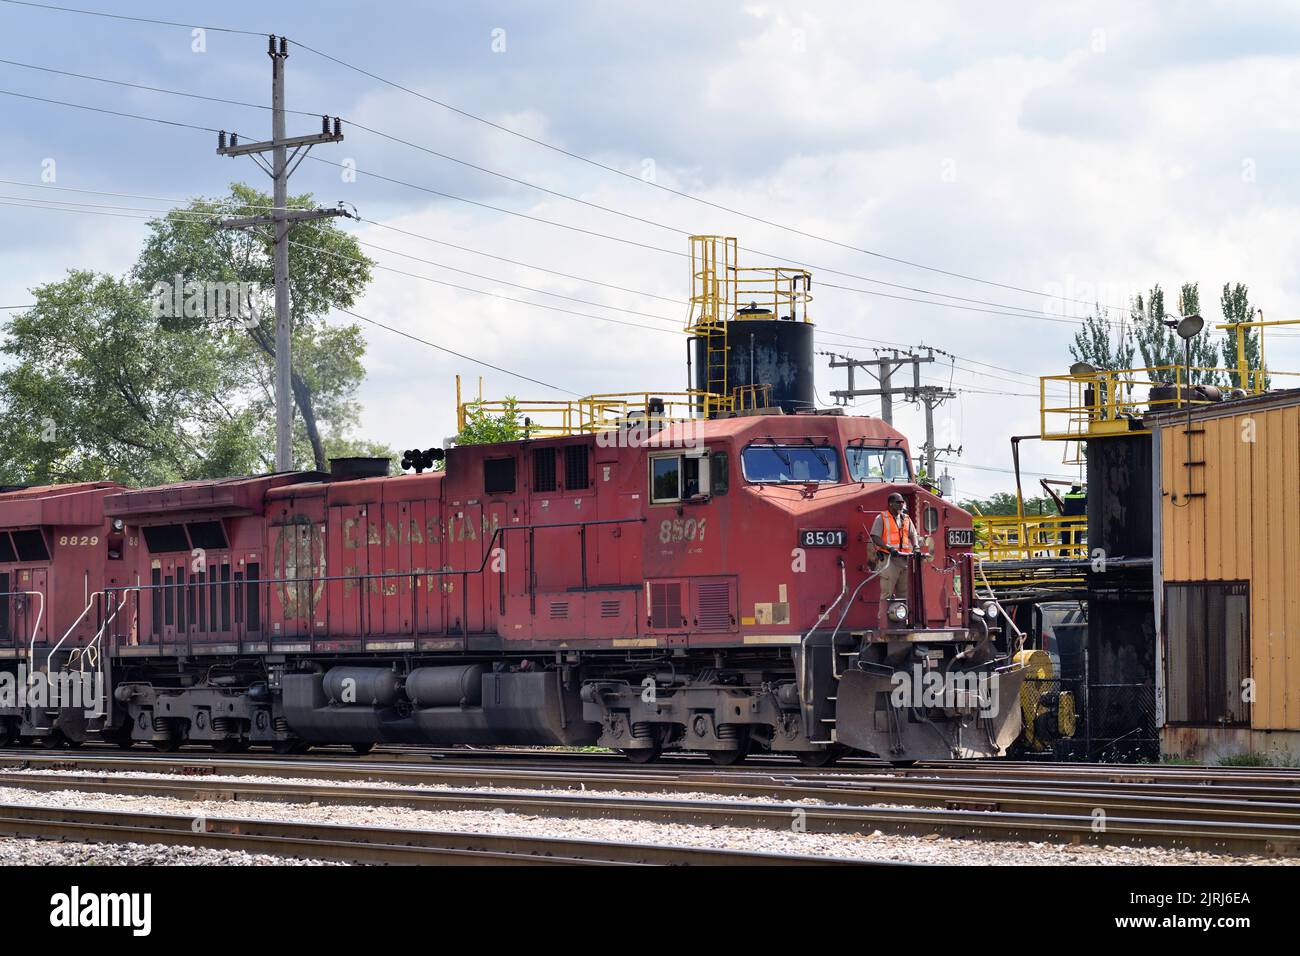 Franklin Park, Illinois, USA. Mit einem Besatzungsmitglied, das auf der vorderen Plattform der Bleilokomotive fährt, kommt ein Güterzug auf einem Eisenbahnhof an. Stockfoto